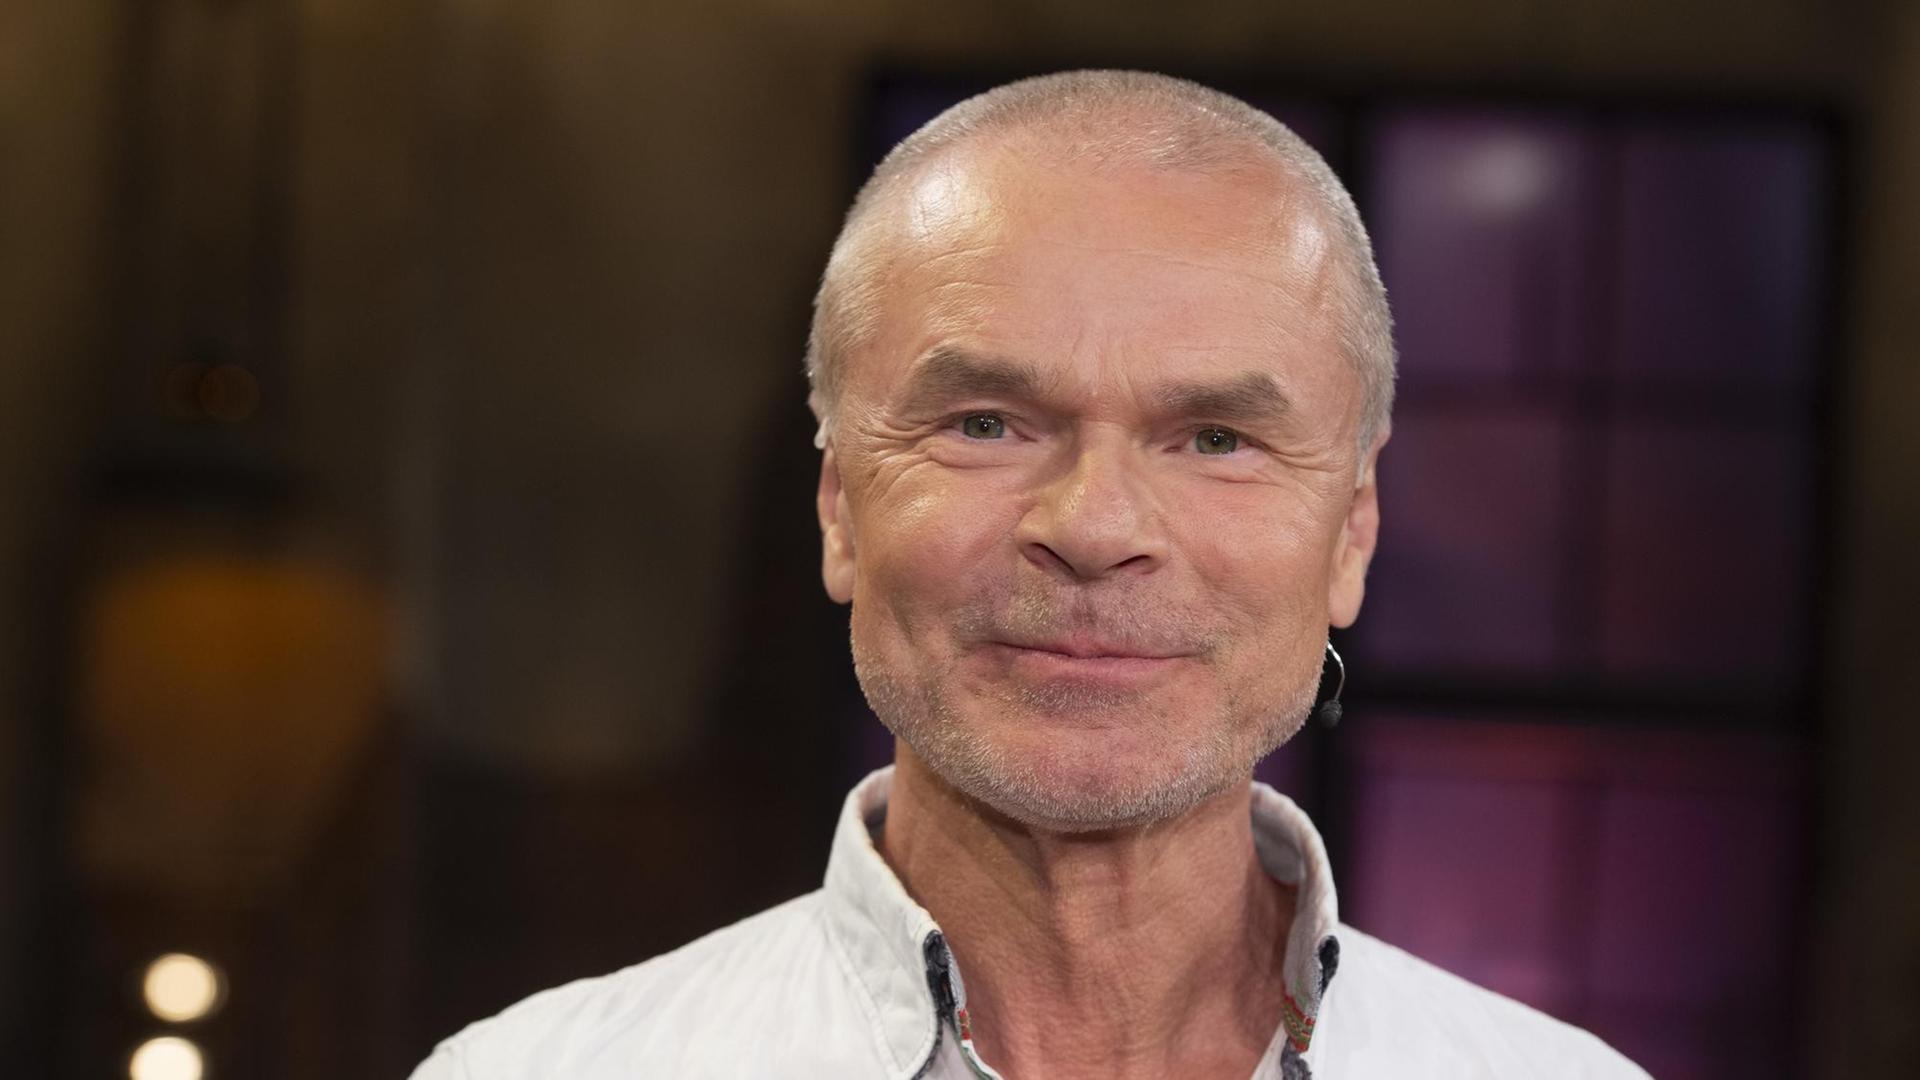 Jürgen Domian zu Gast in der Sendung "Koelner Treff" im WDR Fernsehen, 20.09.2019.